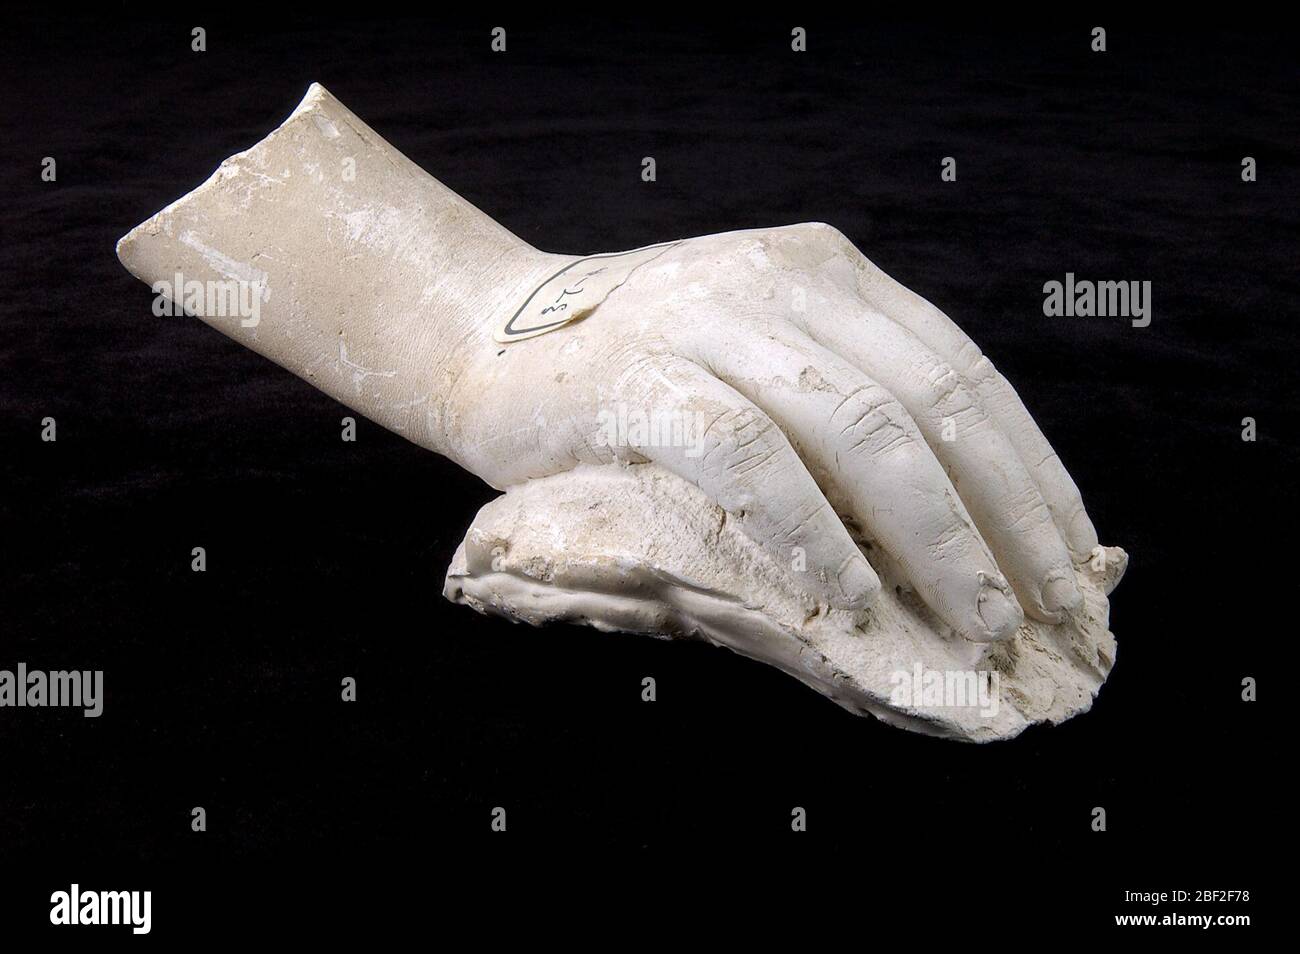 Yeso de una mano derecha no identificada en una posición relajada. Hay muchos fragmentos de yeso de detalles anatómicos en la colección Hiram Powers que no pueden ser identificados. Foto de stock